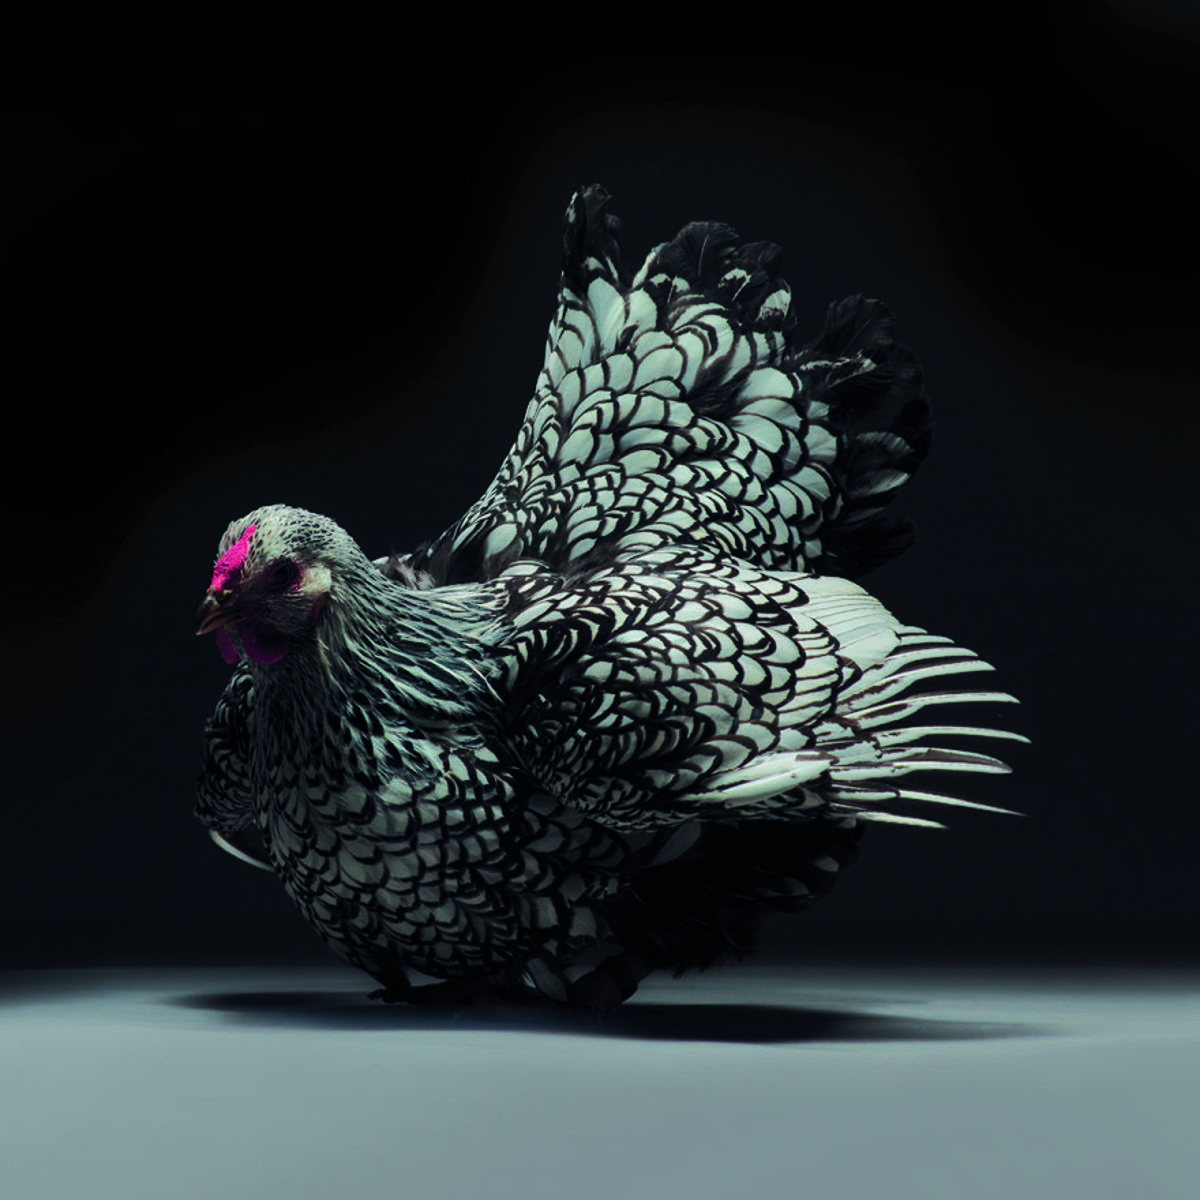 Retratos das galinhas mais bonitas do planeta capturam sua beleza subestimada 06